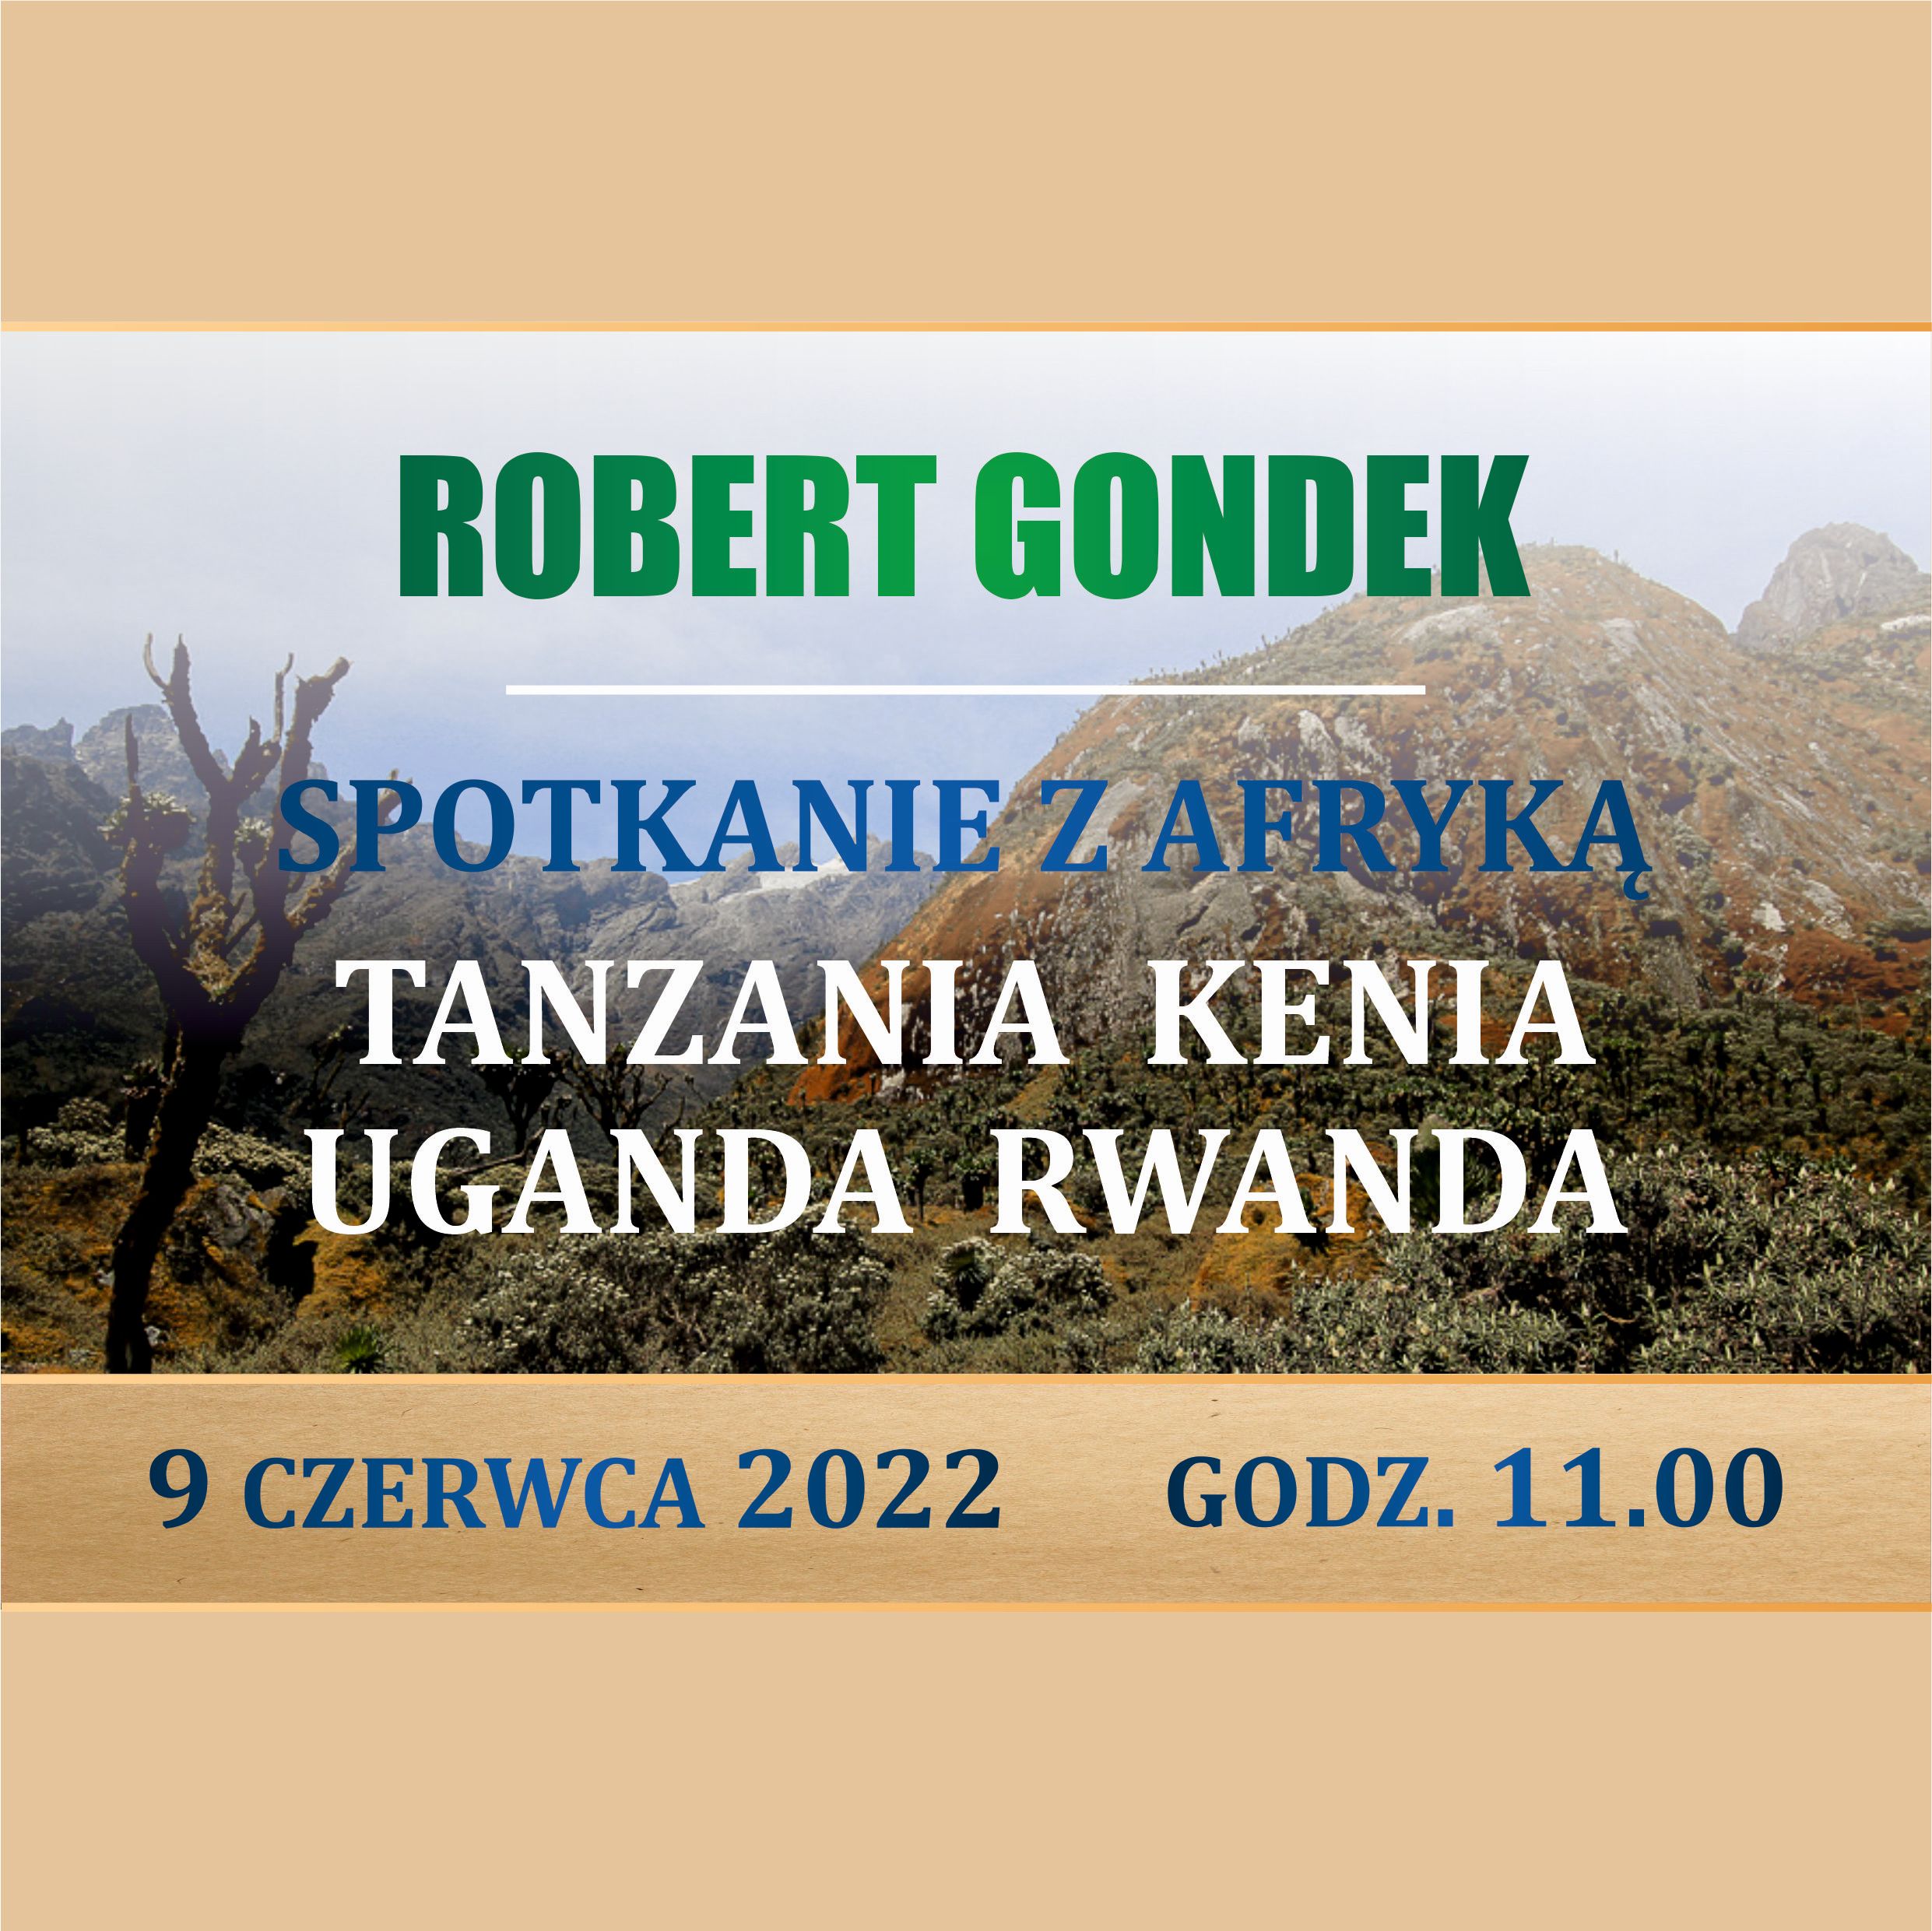 ROBERT GONDEK – SPOTKANIE Z AFRYKĄ: TANZANIA, KENIA, UGANDA, RWANDA – 9 Czerwca 2022, Godz. 11.00